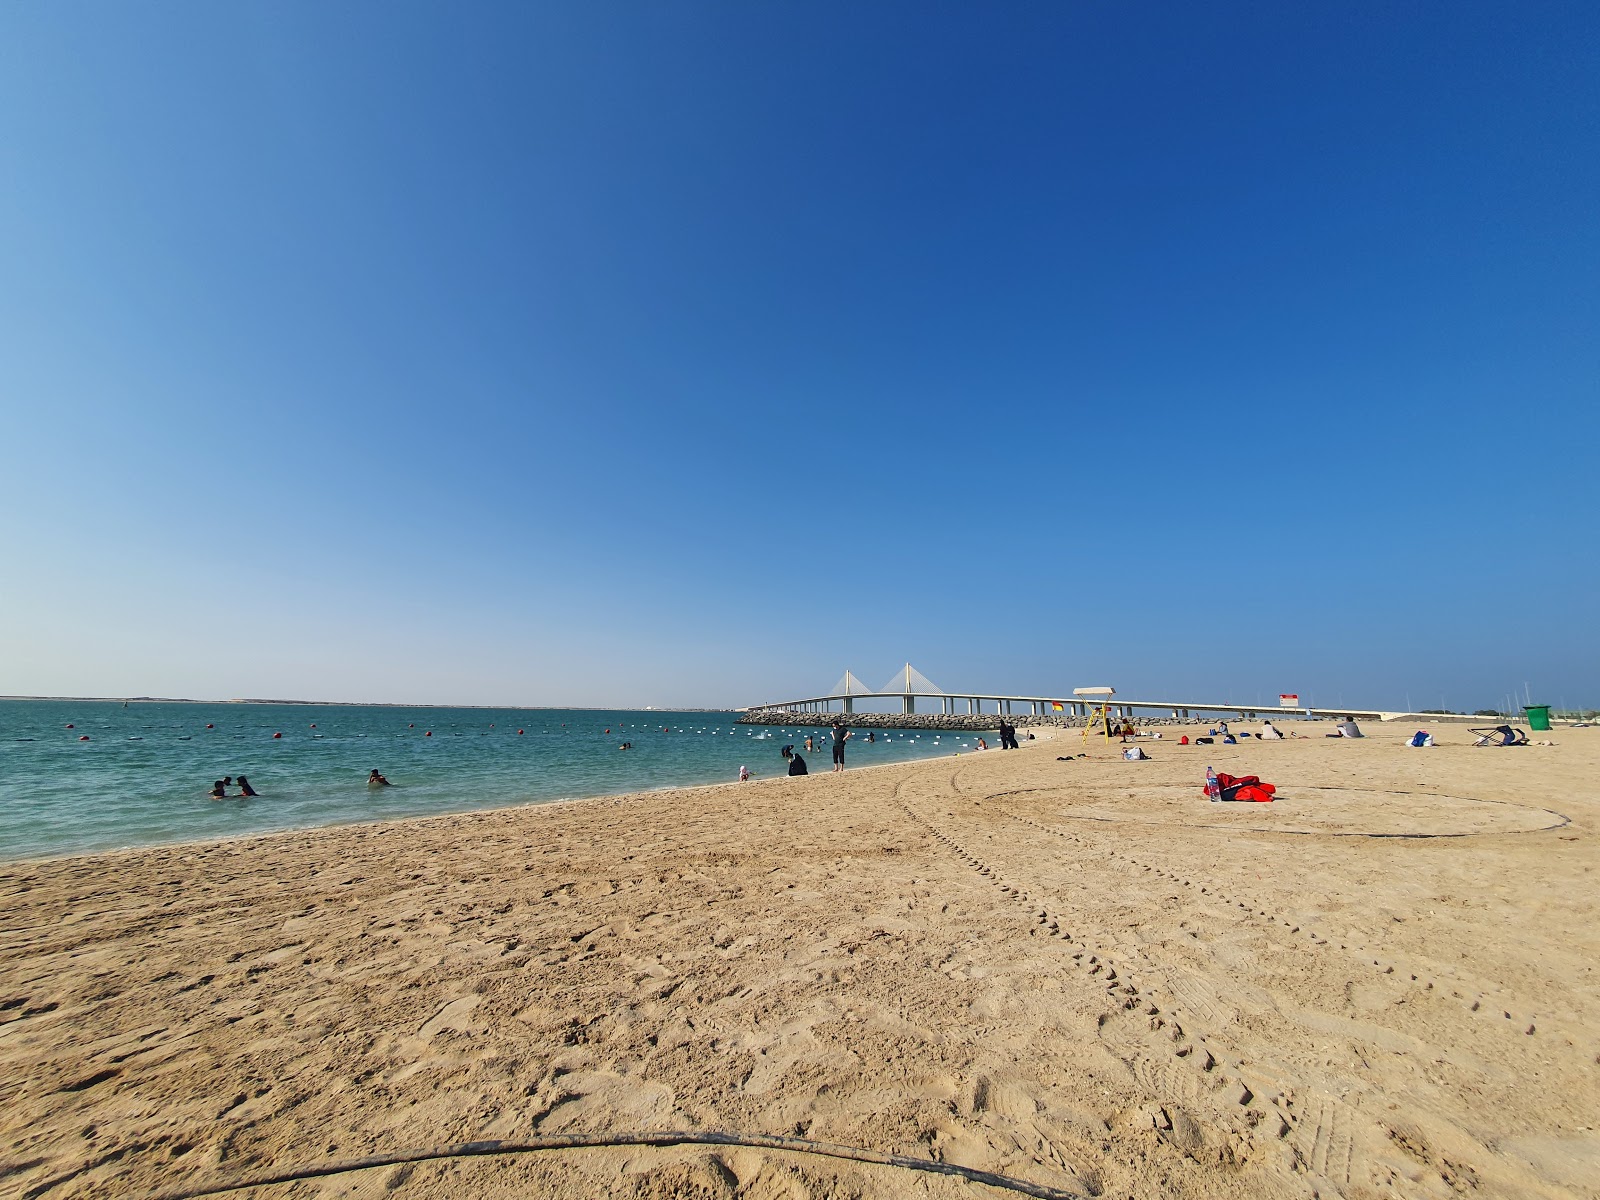 Al Bateen beach'in fotoğrafı imkanlar alanı